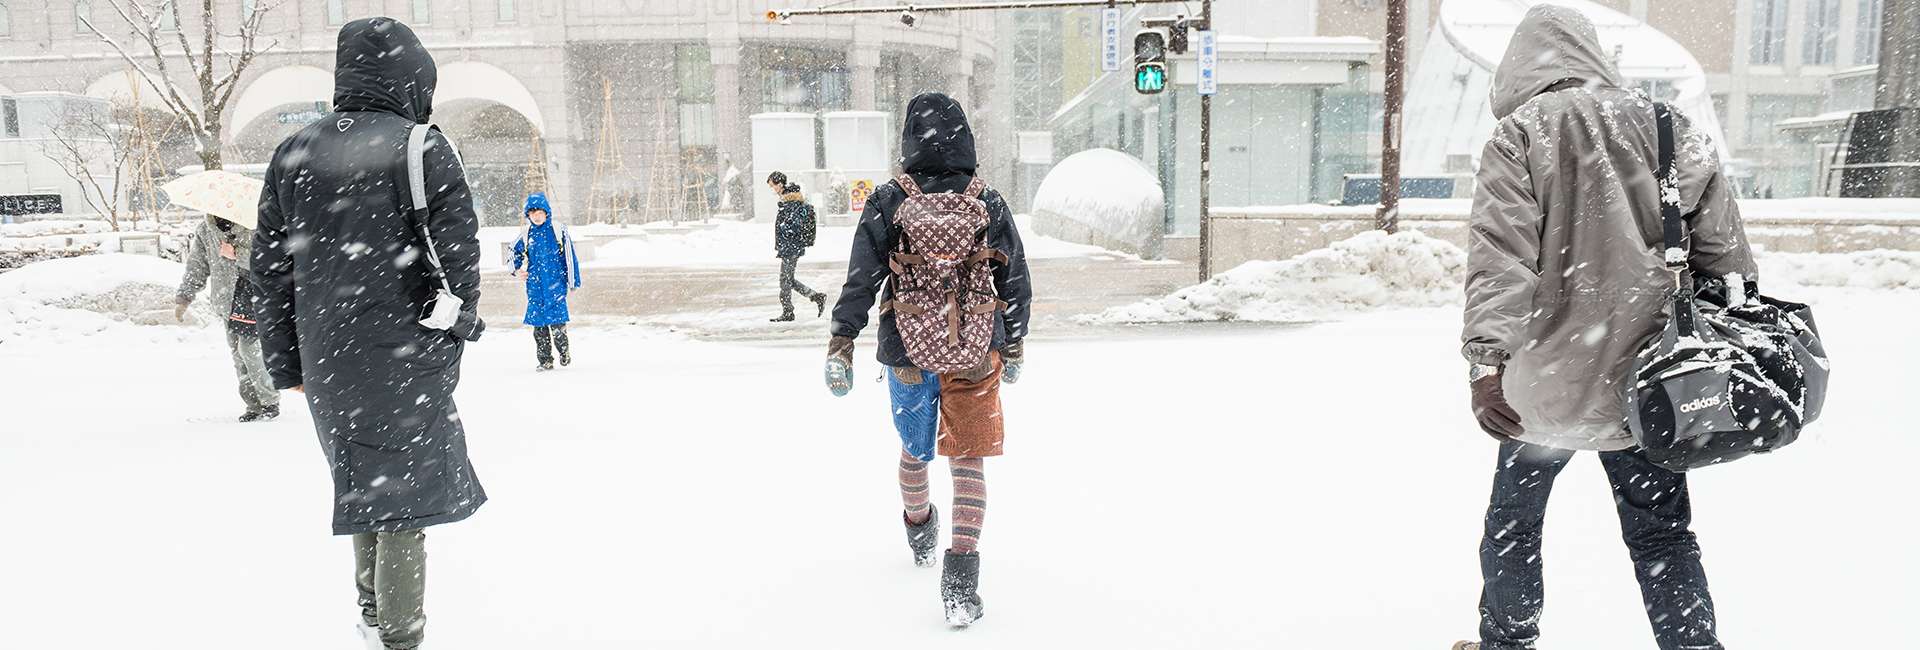 Sapporo in winter under the snow